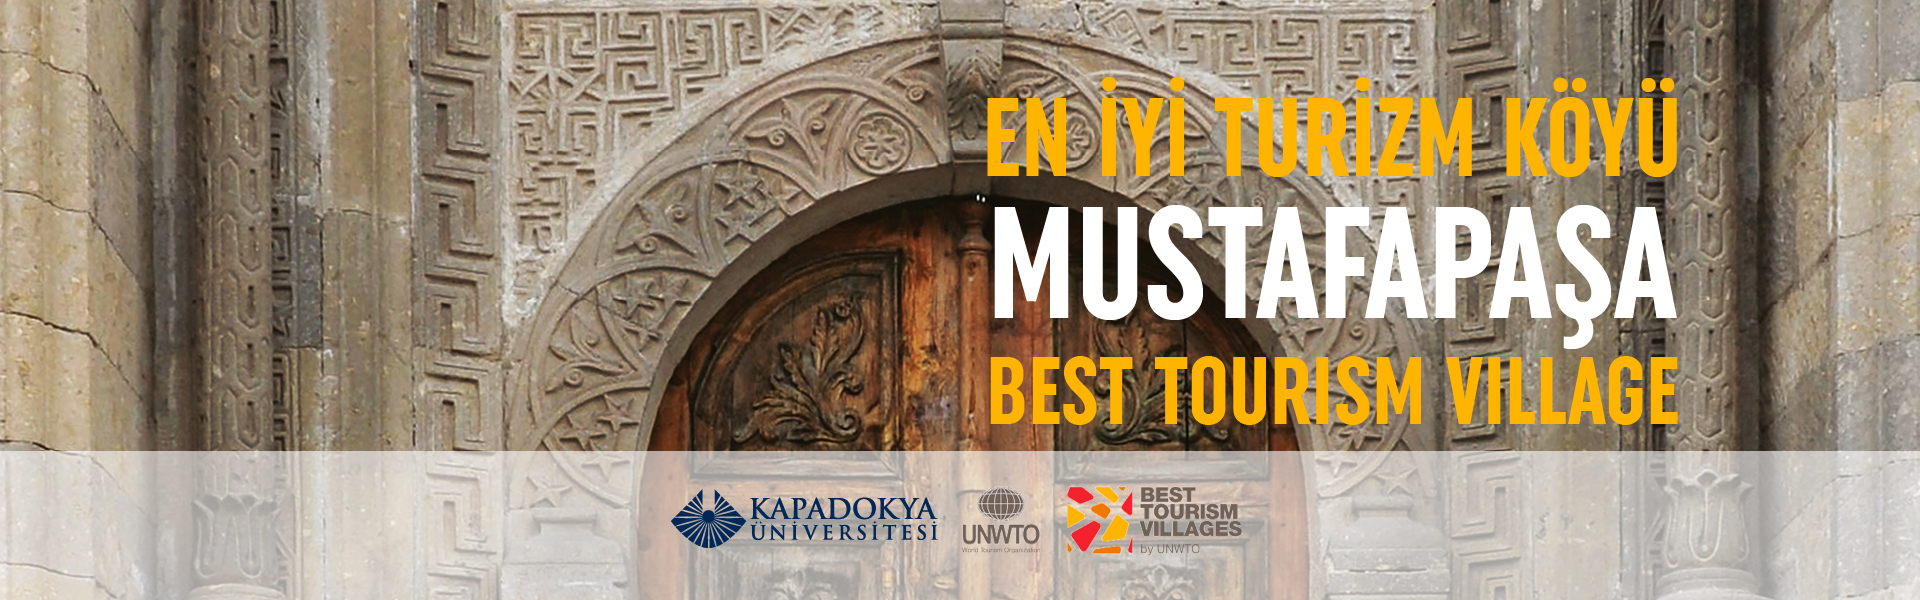 Mustafapaşa, Birleşmiş Milletler Dünya Turizm Örgütü tarafından  en iyi turizm köyü seçildi